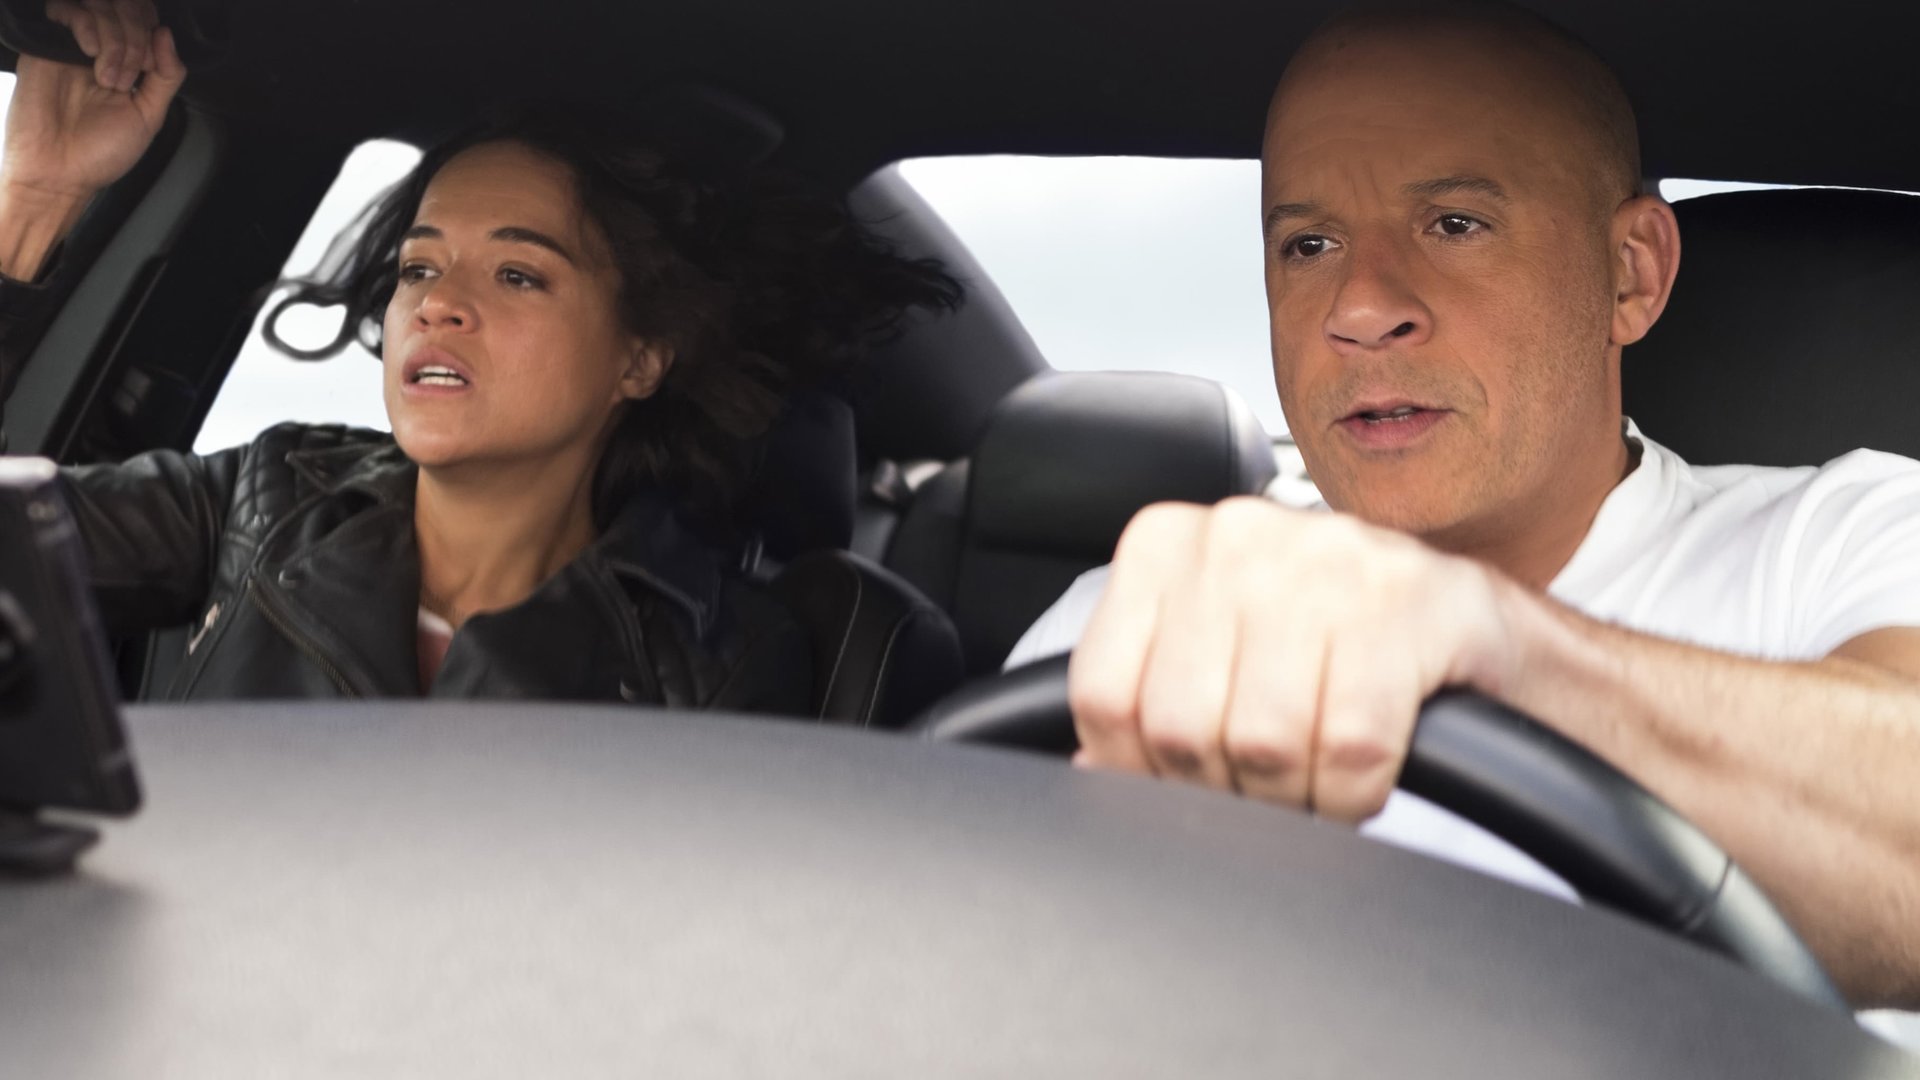 #„Fast & Furious 10“-Schock: Kurz nach Drehbeginn steigt plötzlich der Regisseur aus